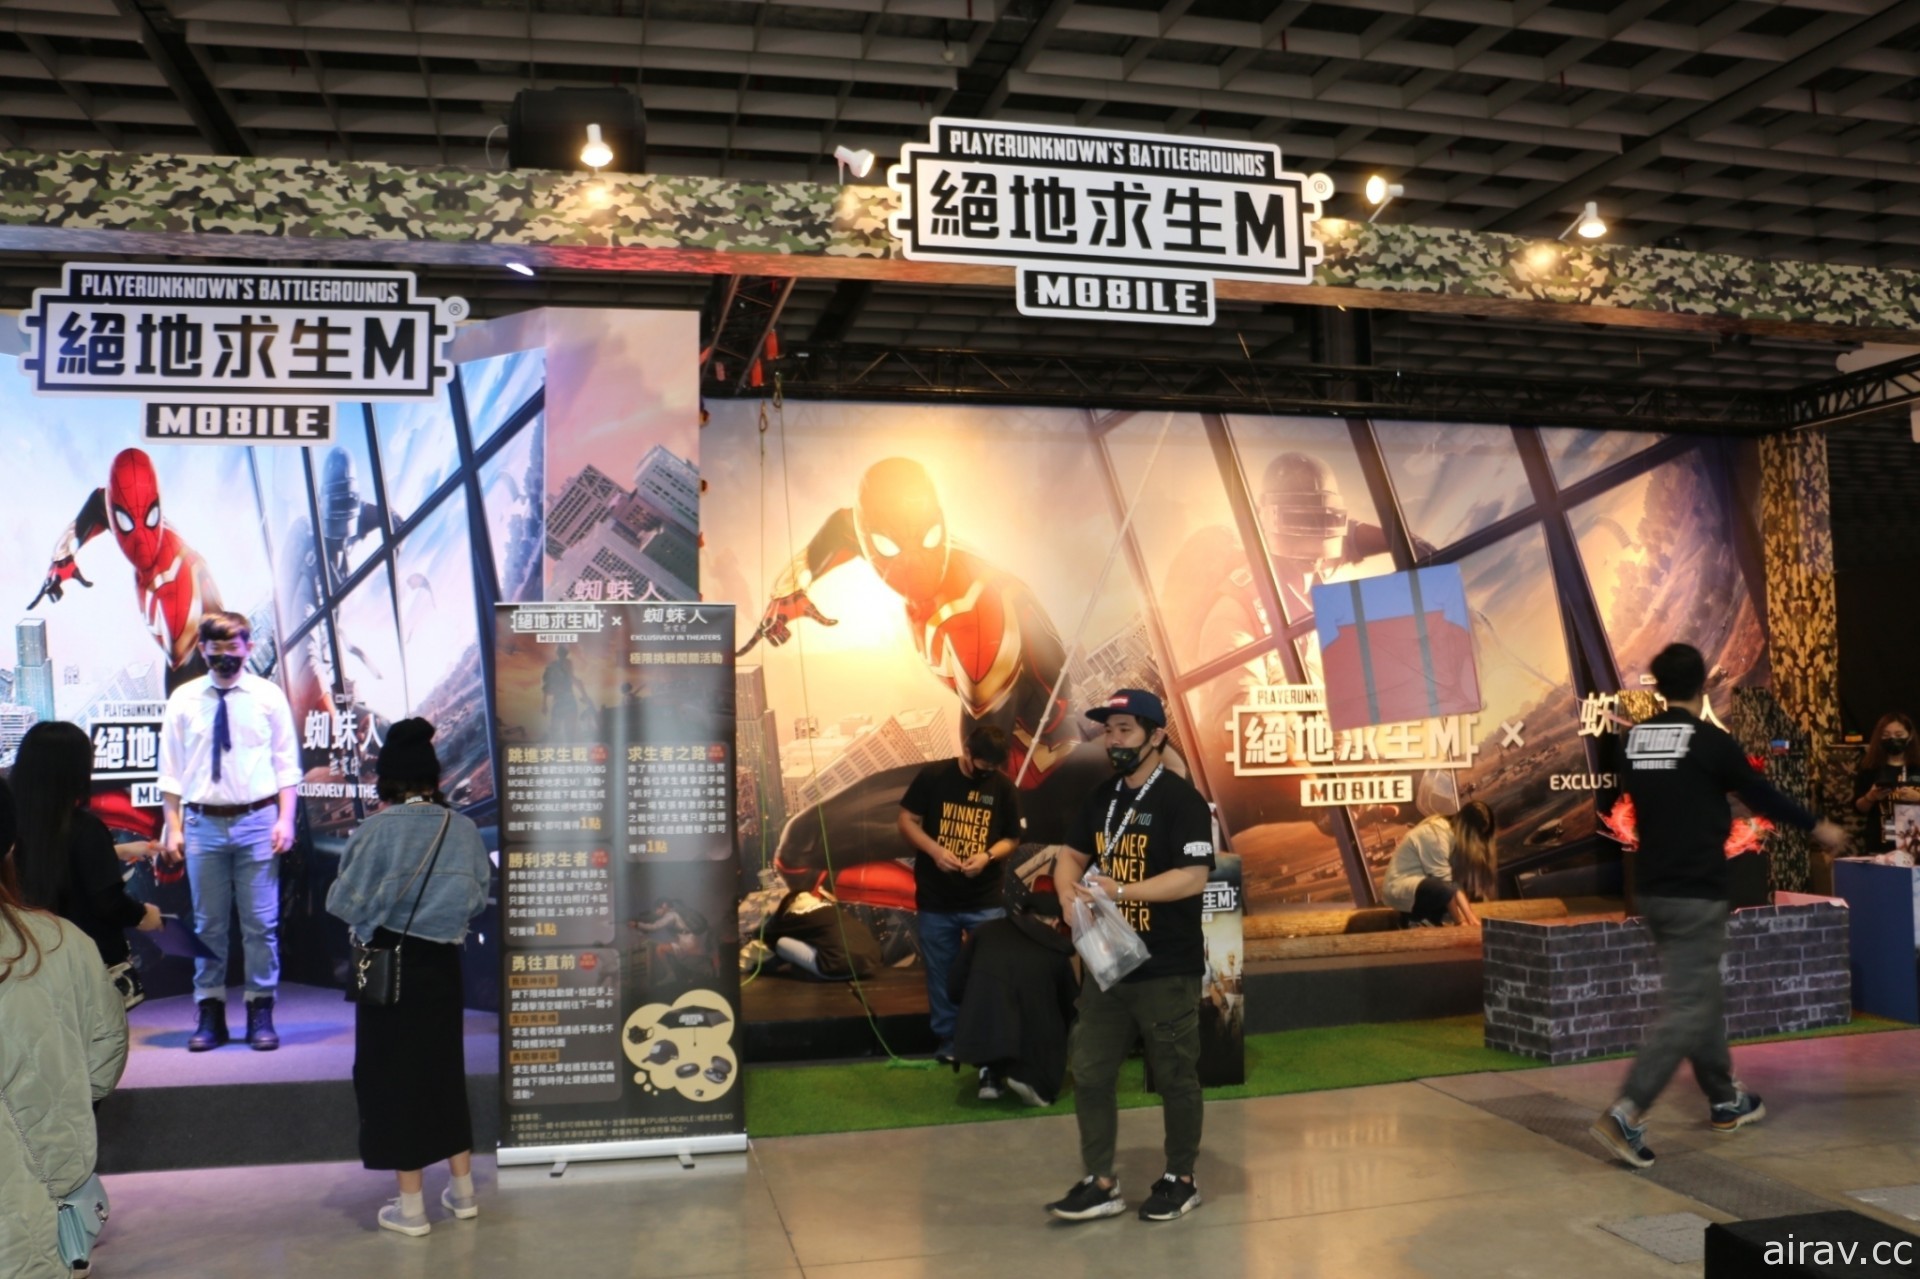 【TpGS 22】2022 台北電玩展今日正式登場 現場攤位搶先看